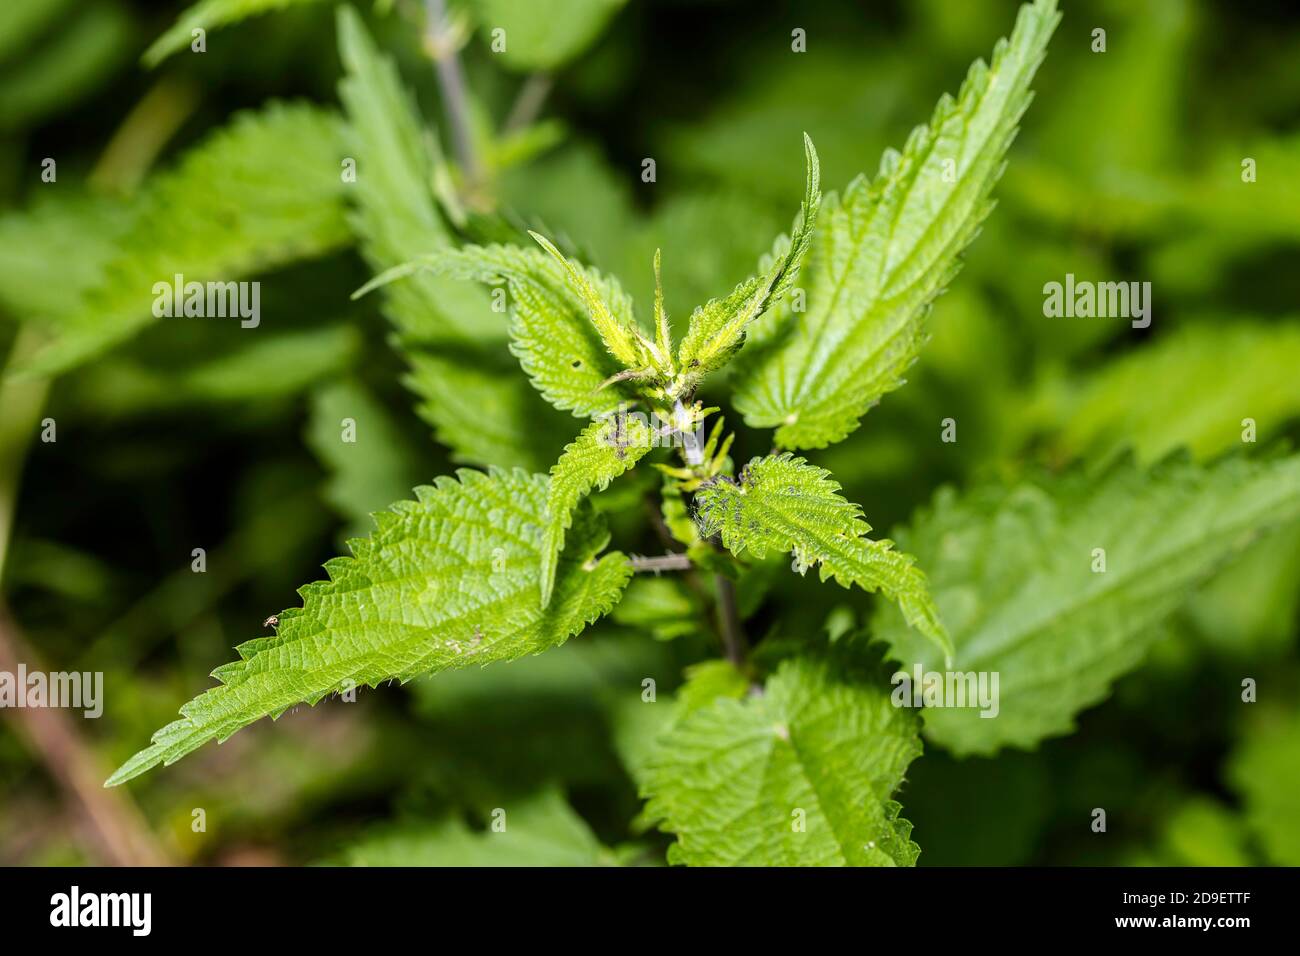 Makro Foto einer Pflanzennessel. Brennnessel mit grünen Blättern. Stockfoto